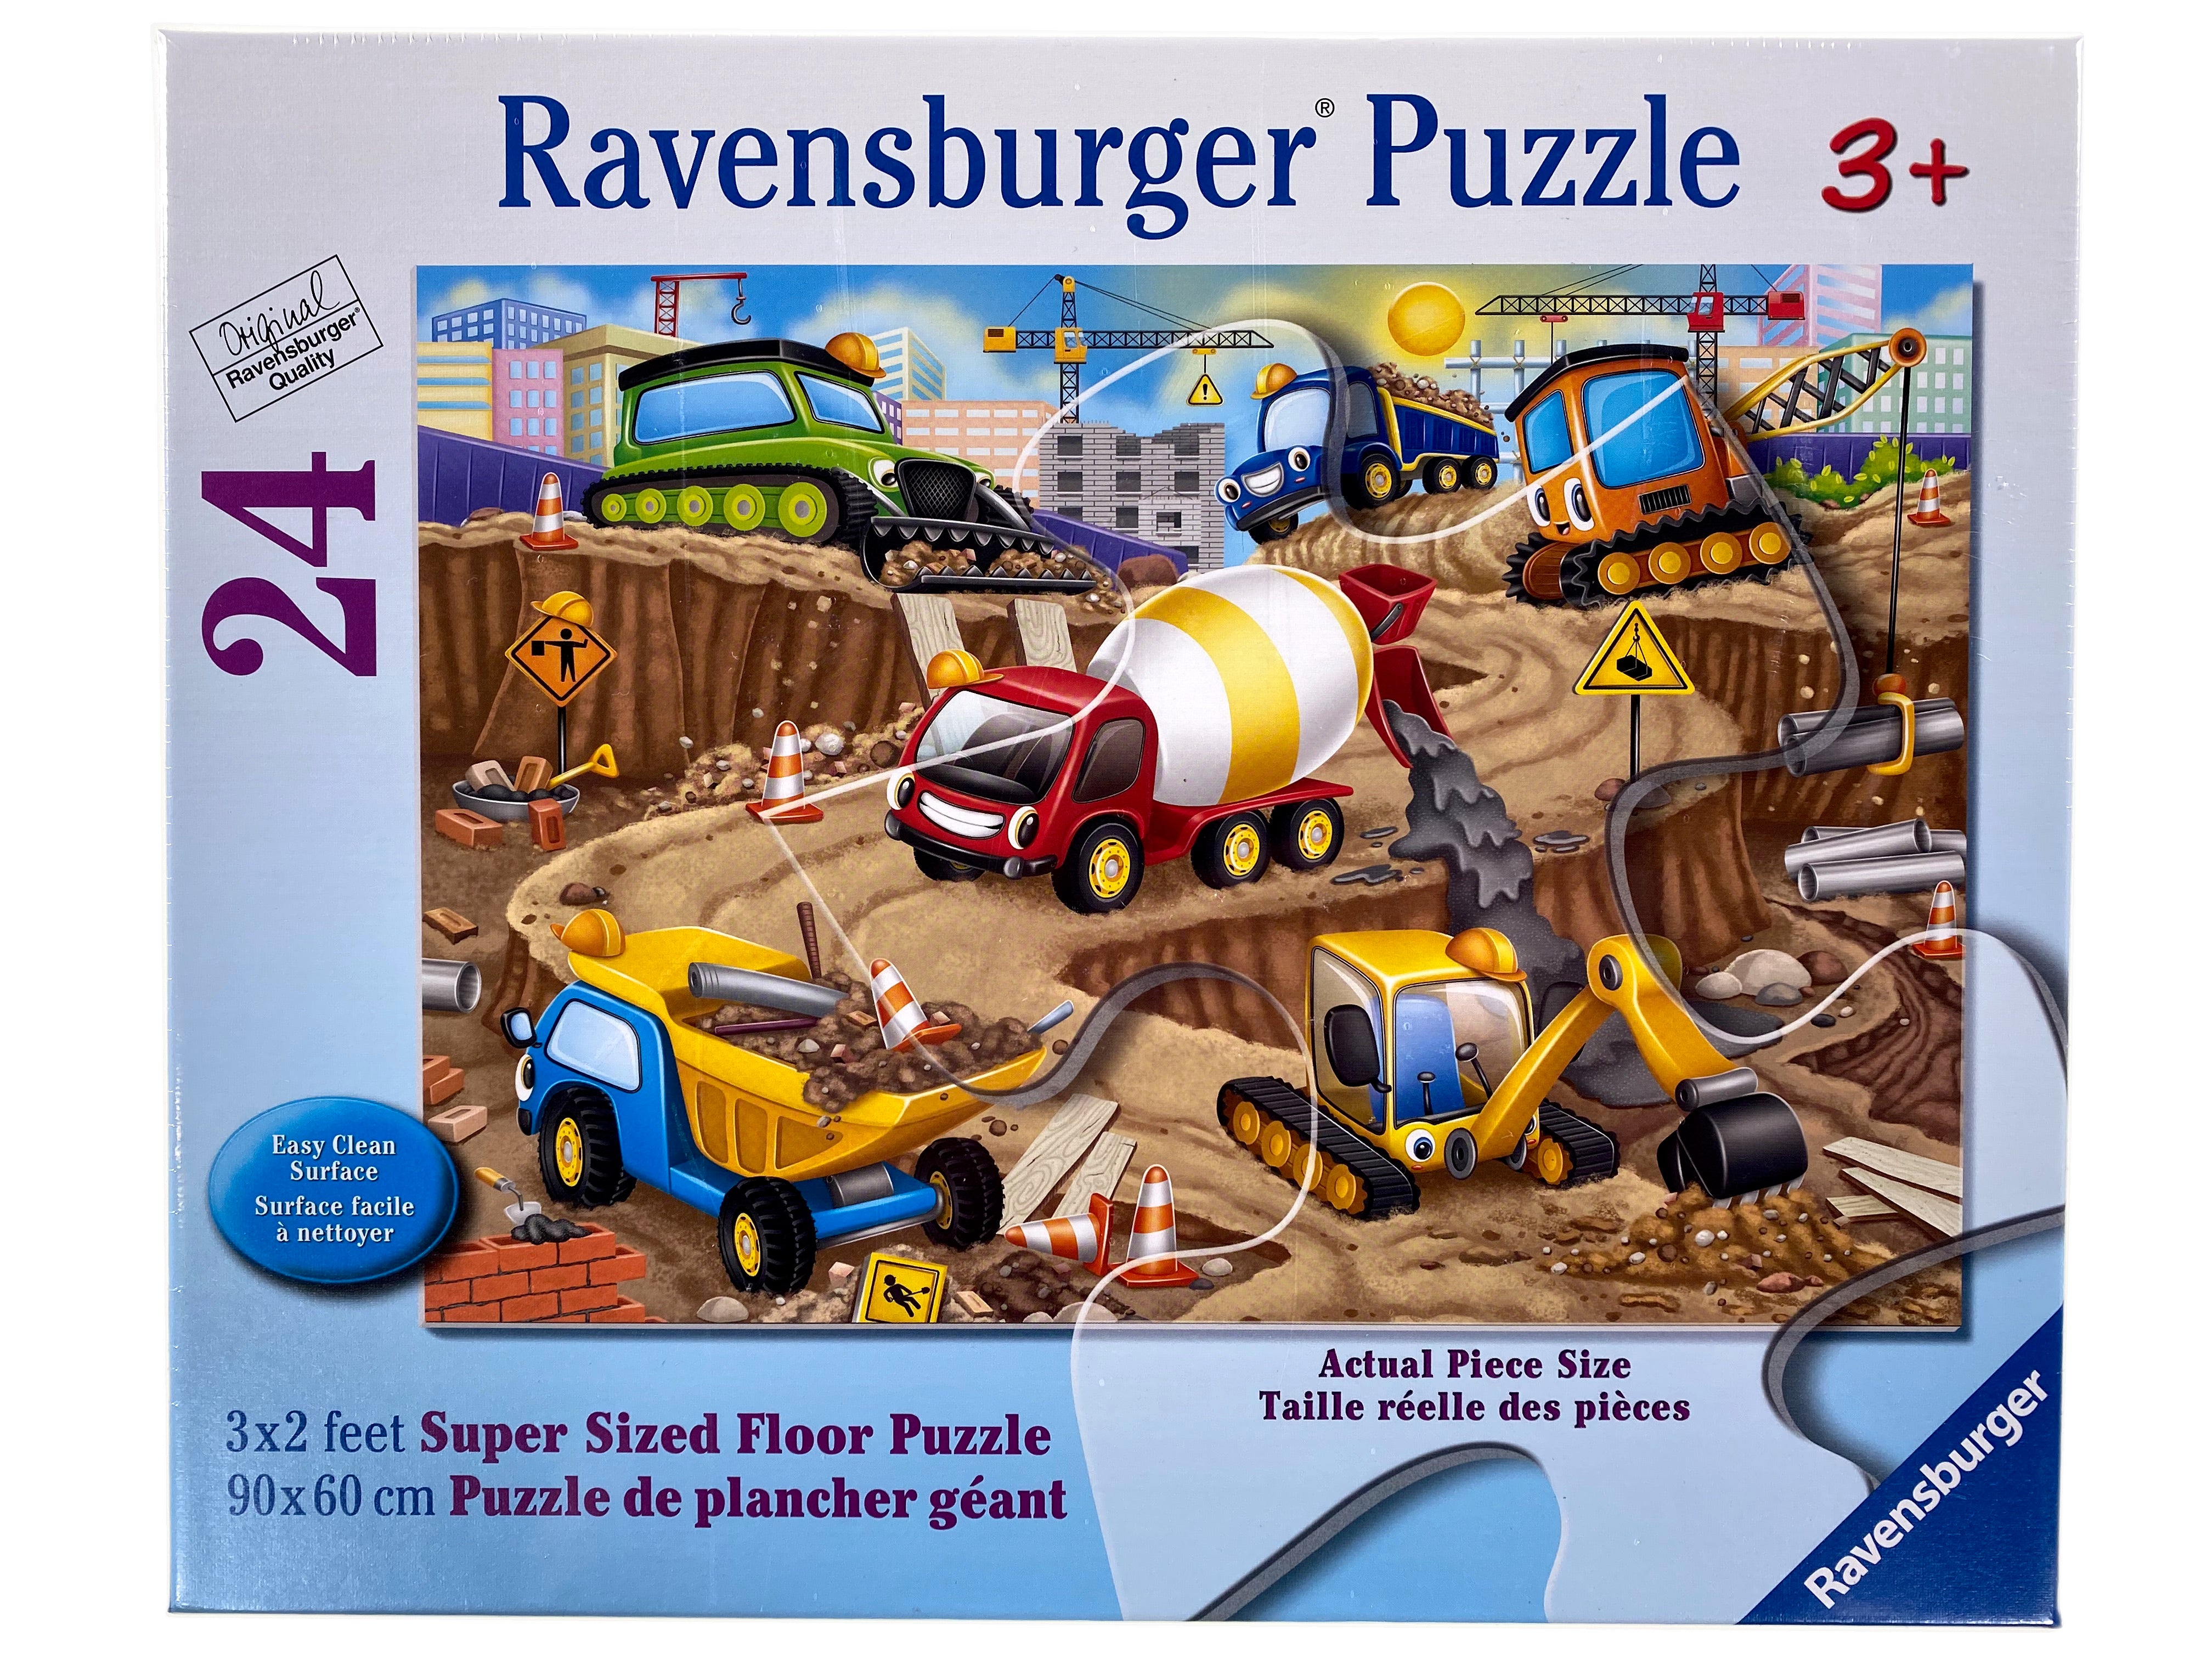 36-Piece Puzzle - Construction Zone